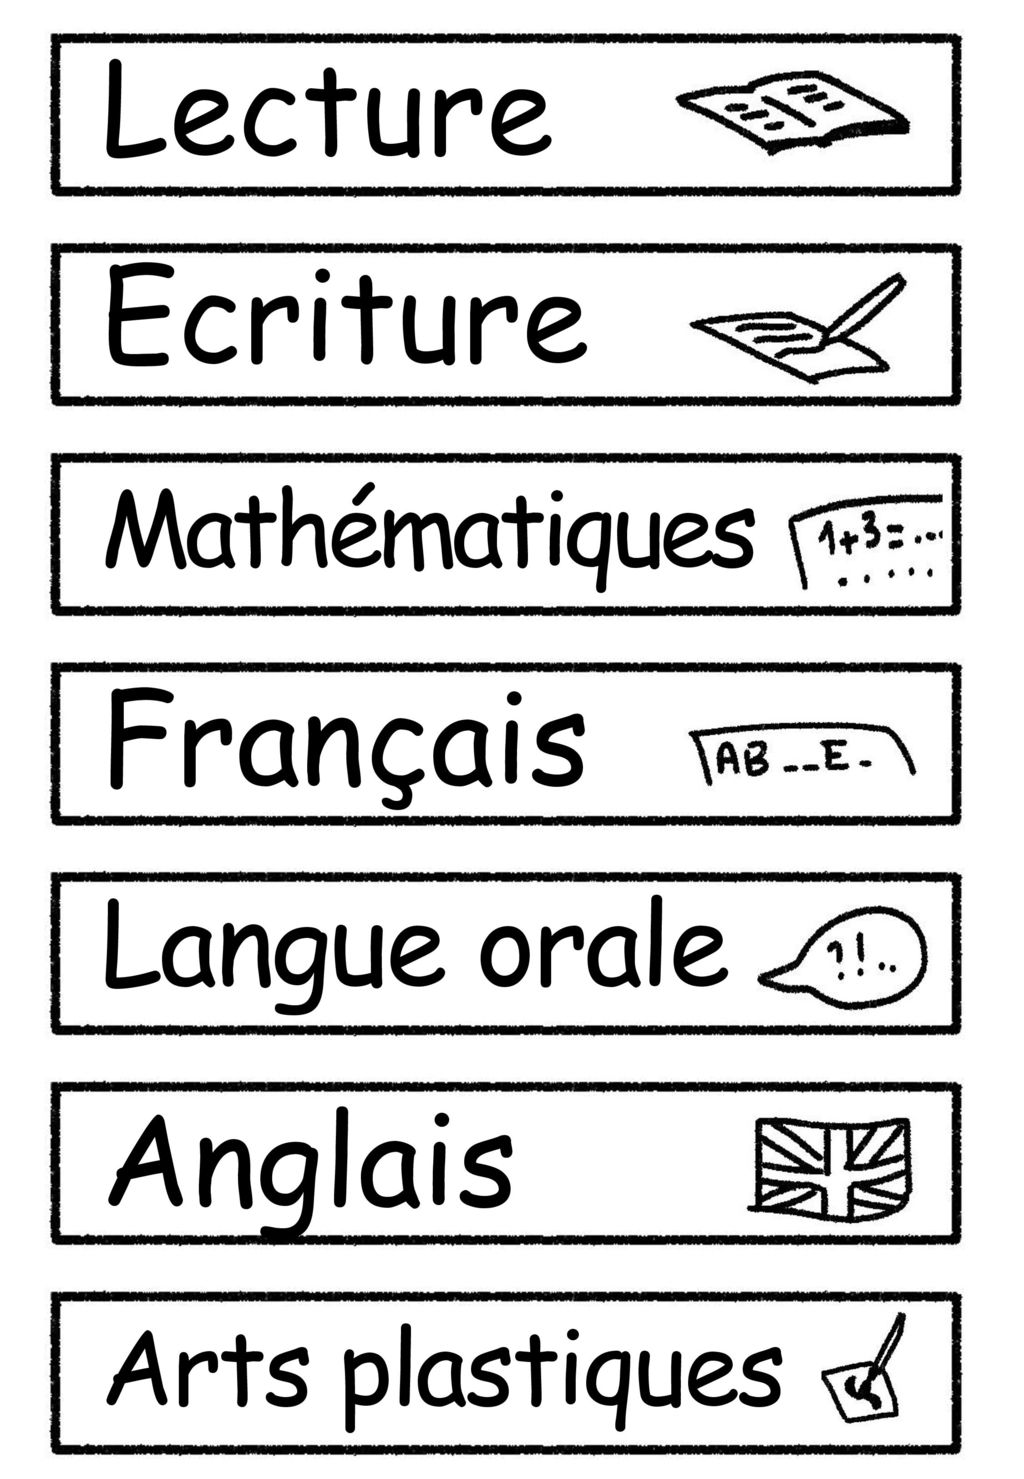 Lecture Ecriture Français Anglais Langue orale Mathématiques